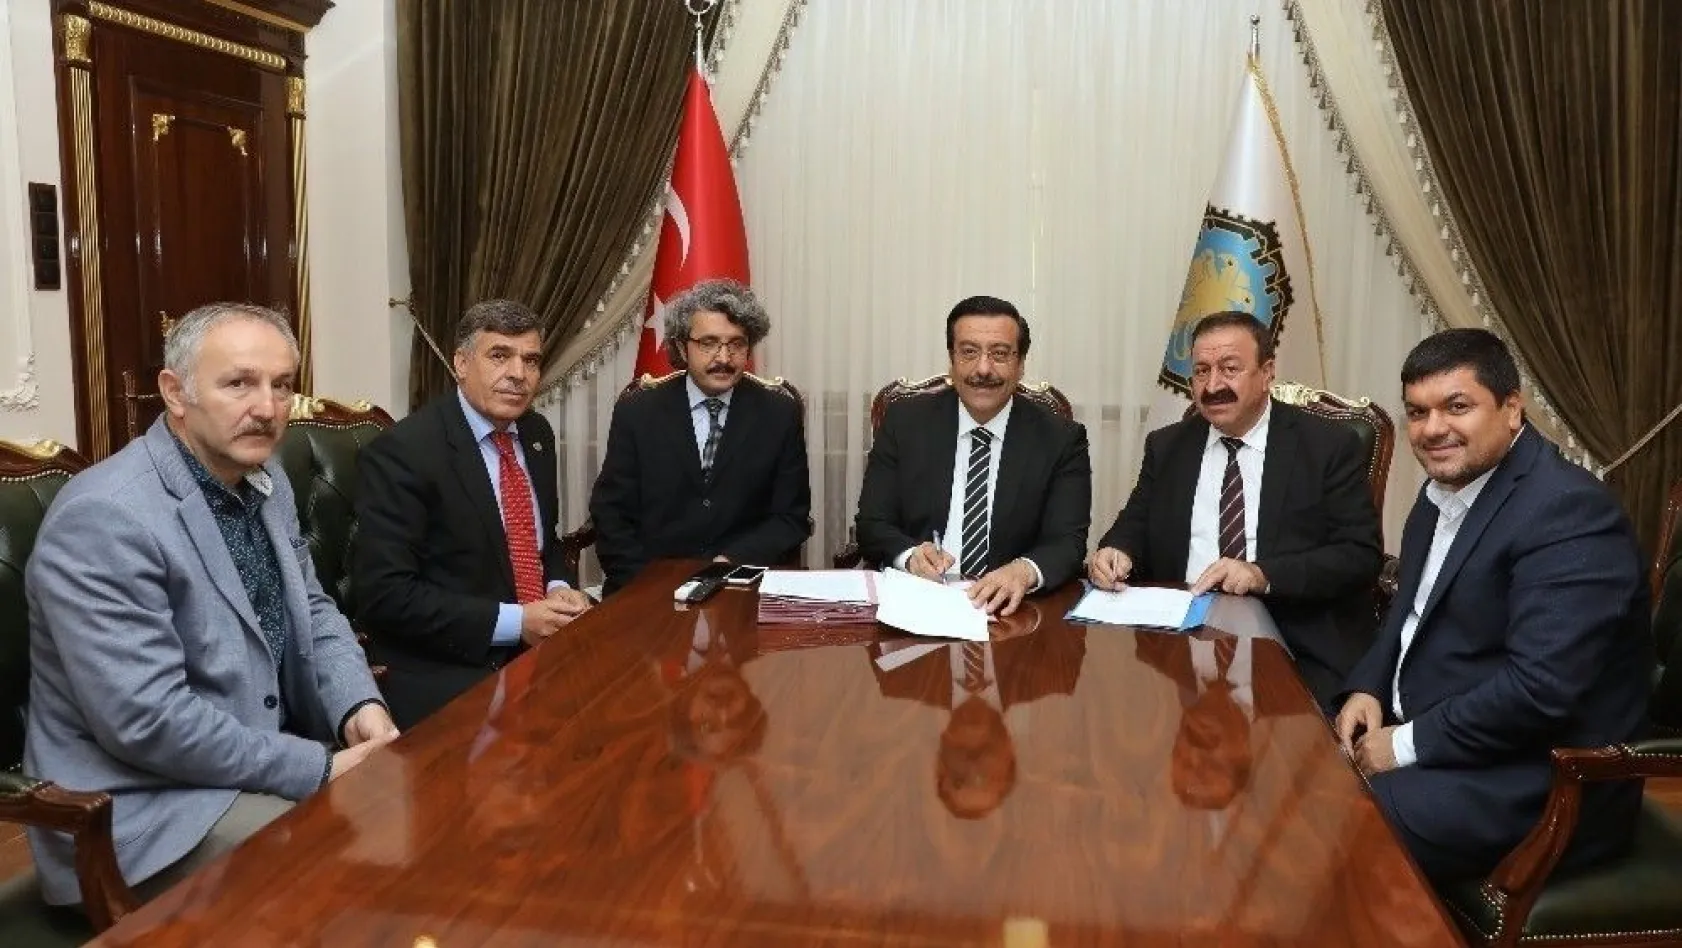 Büyükşehir ile BEM-BİR-SEN arasında Sosyal Denge Sözleşmesi imzalandı
